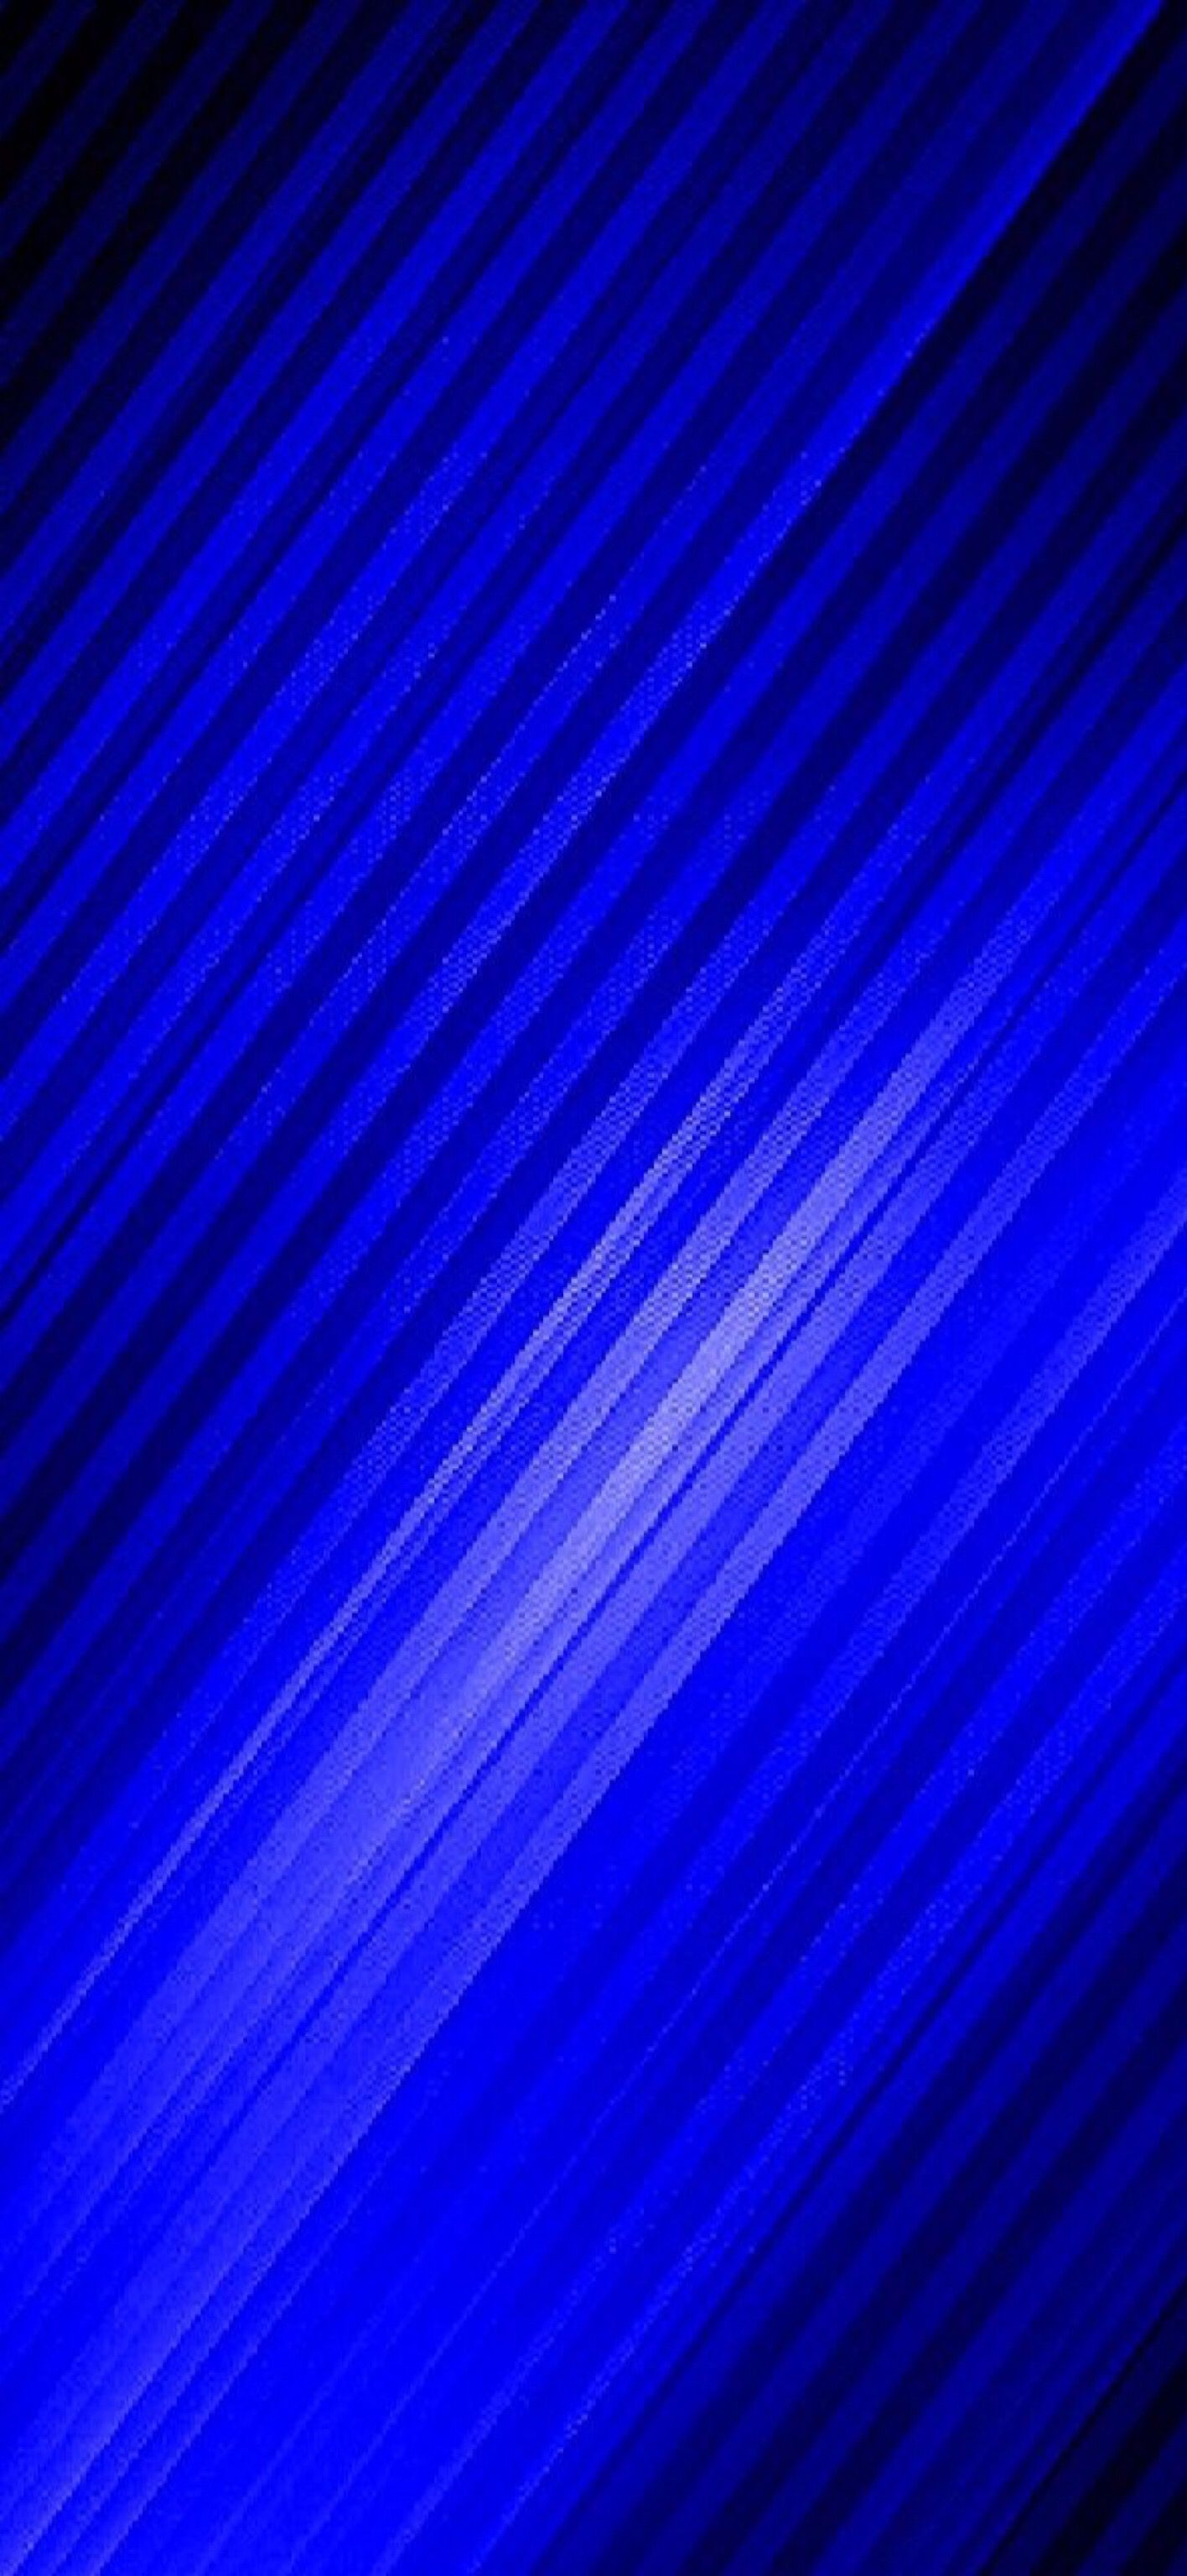 Wallpaper Cobalt Blue 002 for iPhone X. Blue wallpaper, Apple logo, Wallpaper